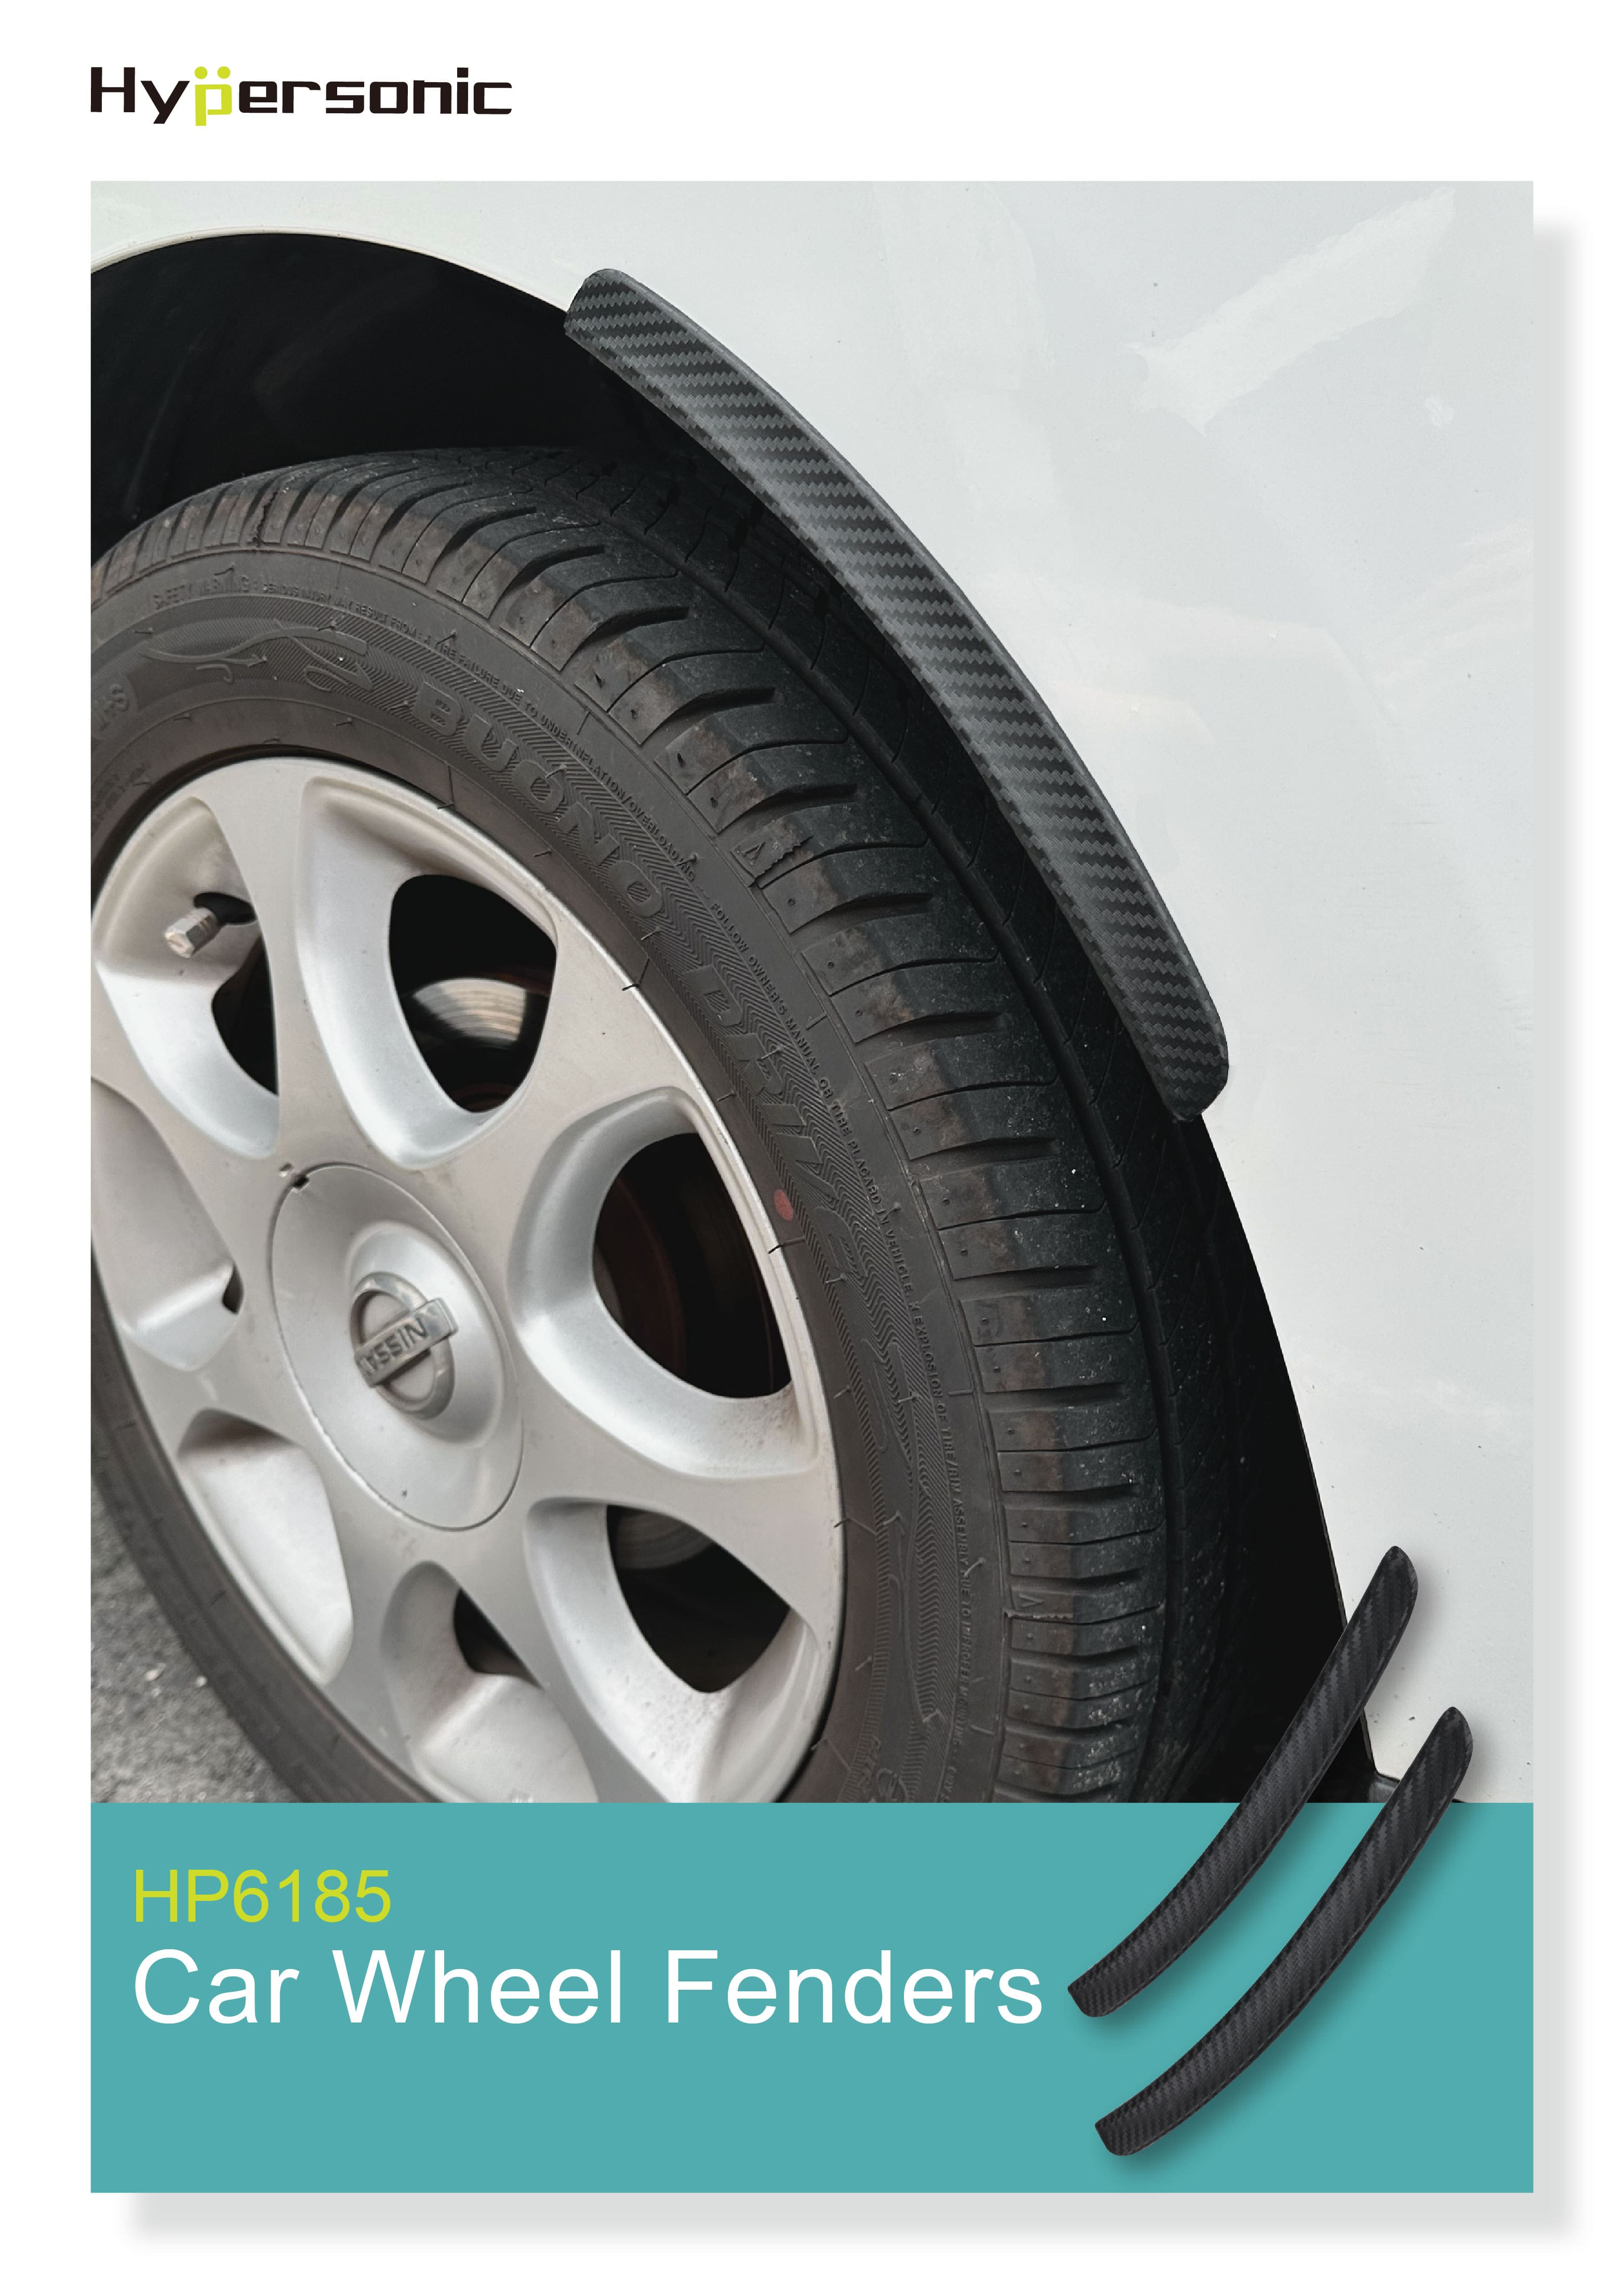 Car Wheel Fenders HP6185